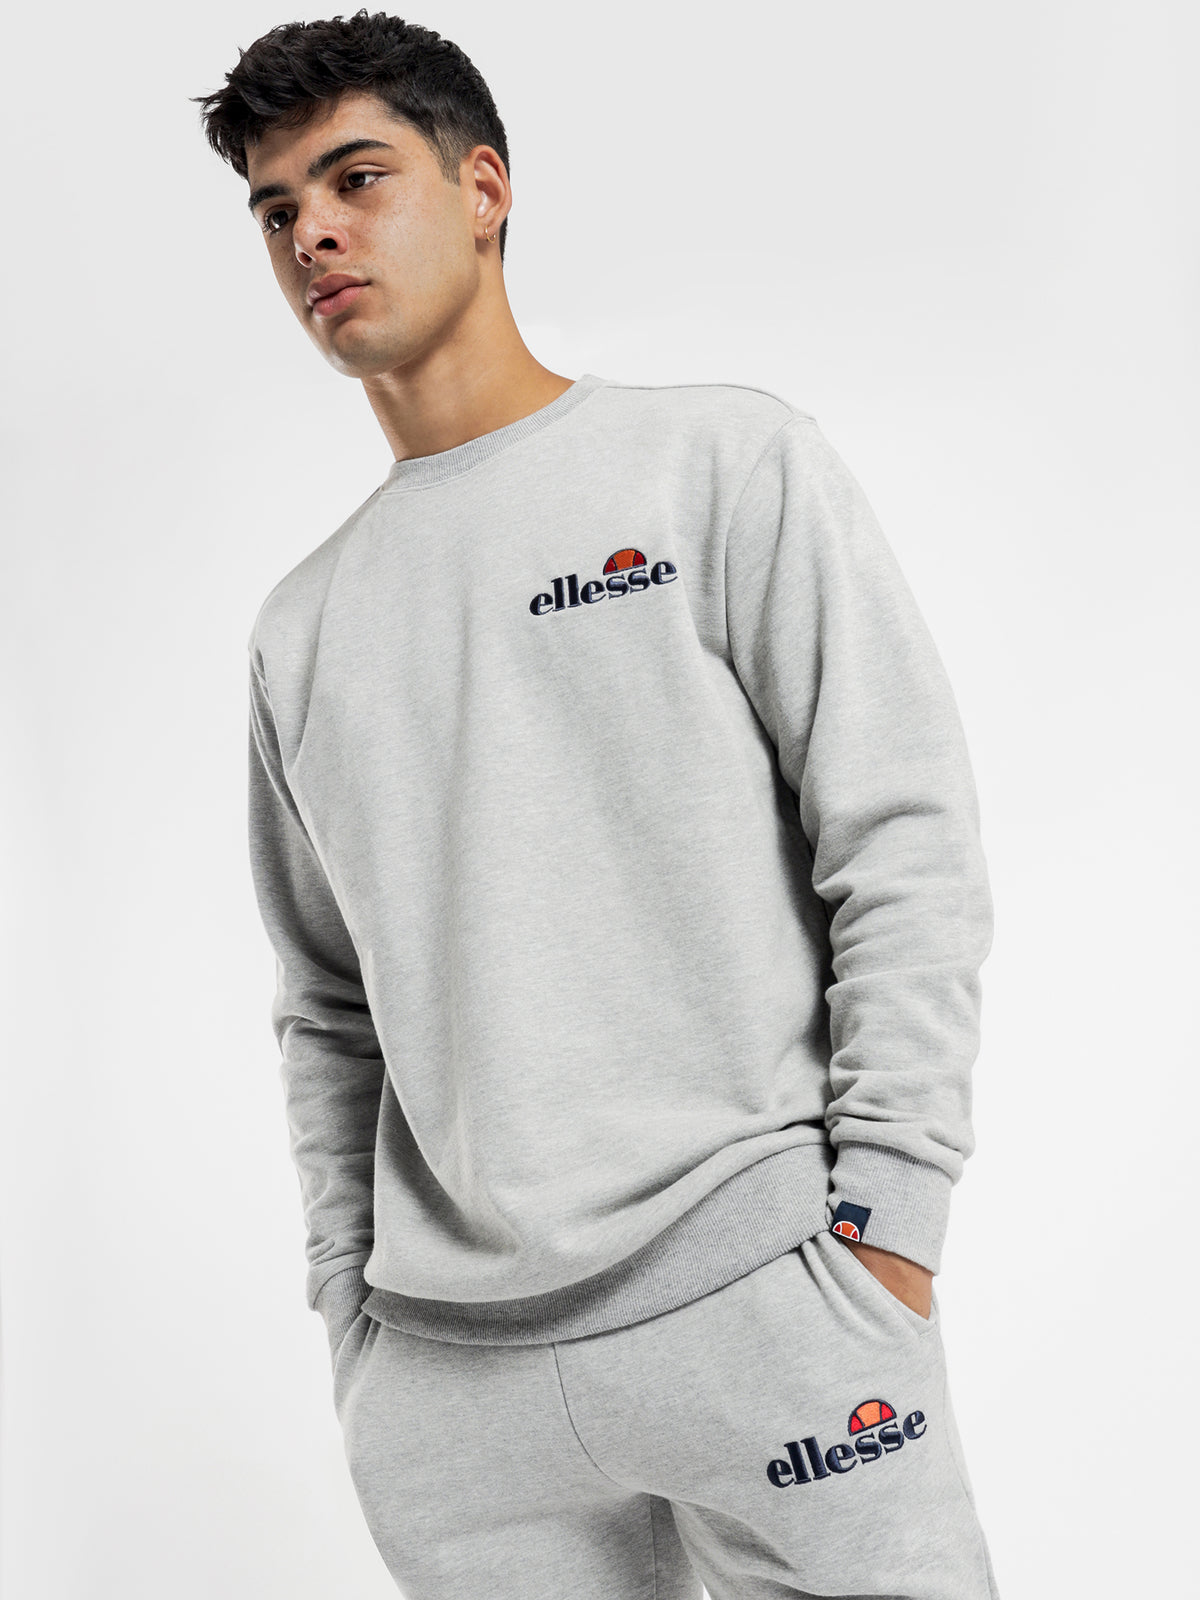 Fierro Sweatshirt in Grey